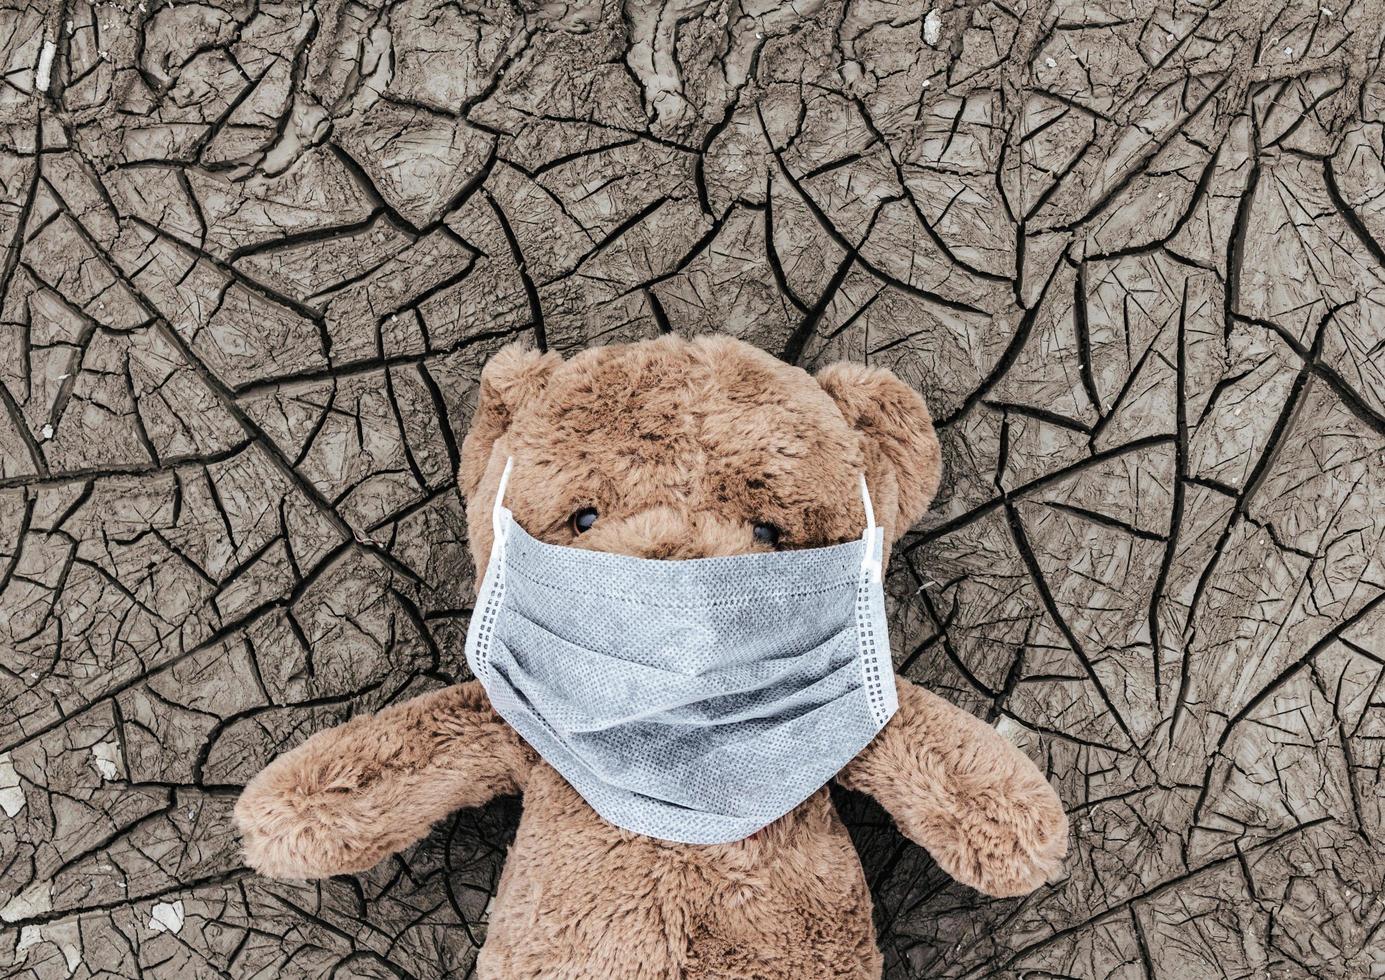 teaddybear dans un masque médical posé sur une terre sèche. photo